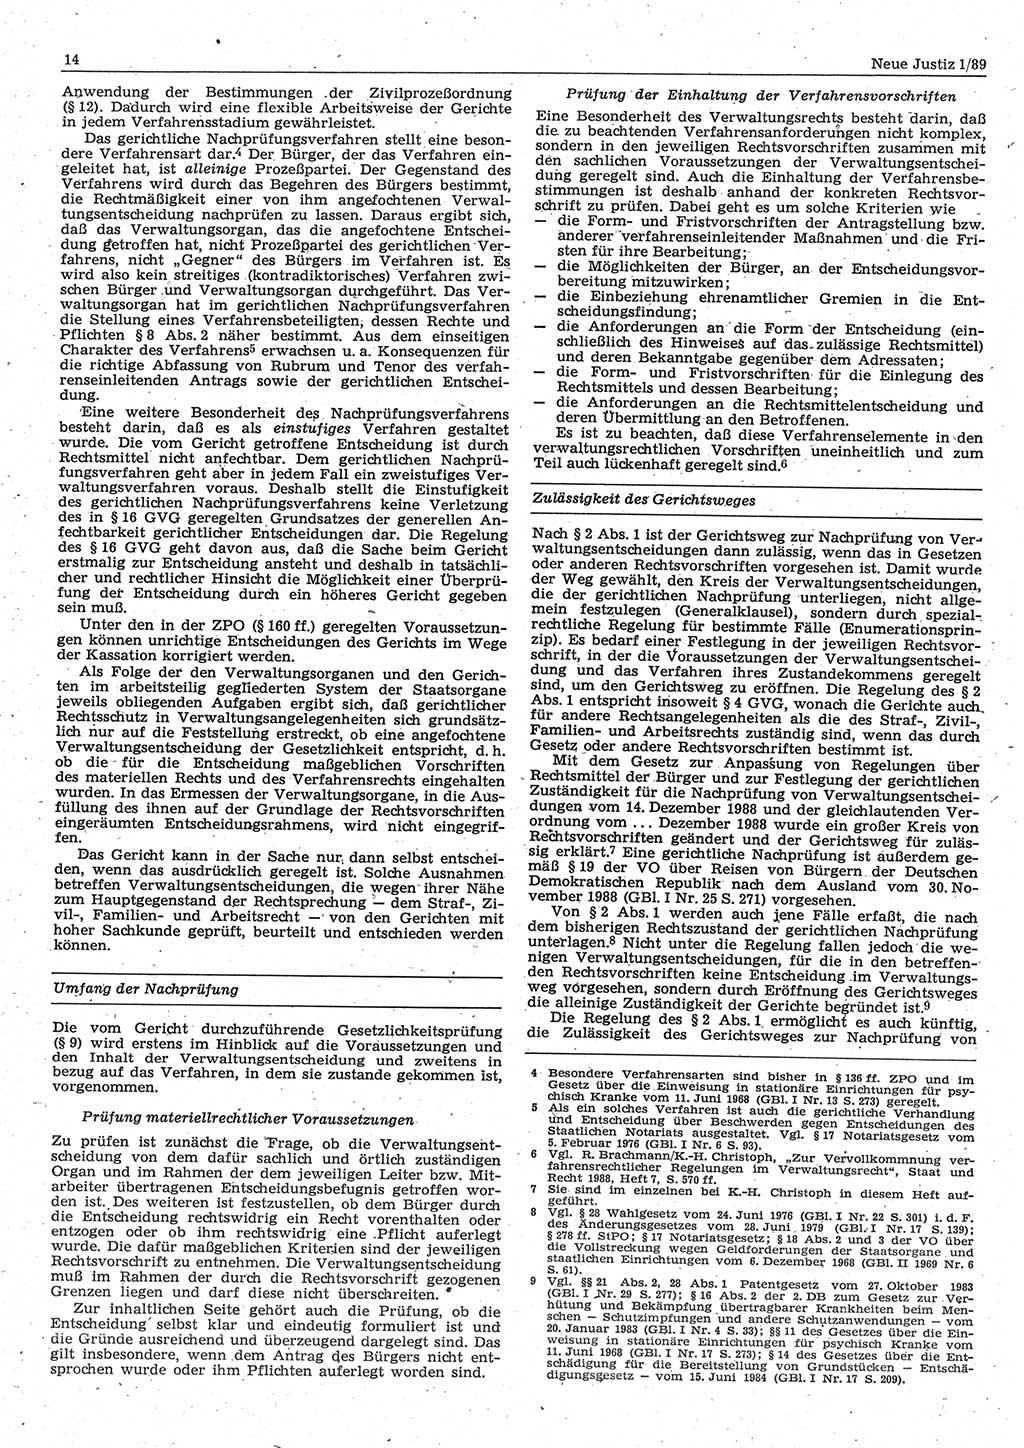 Neue Justiz (NJ), Zeitschrift für sozialistisches Recht und Gesetzlichkeit [Deutsche Demokratische Republik (DDR)], 43. Jahrgang 1989, Seite 14 (NJ DDR 1989, S. 14)